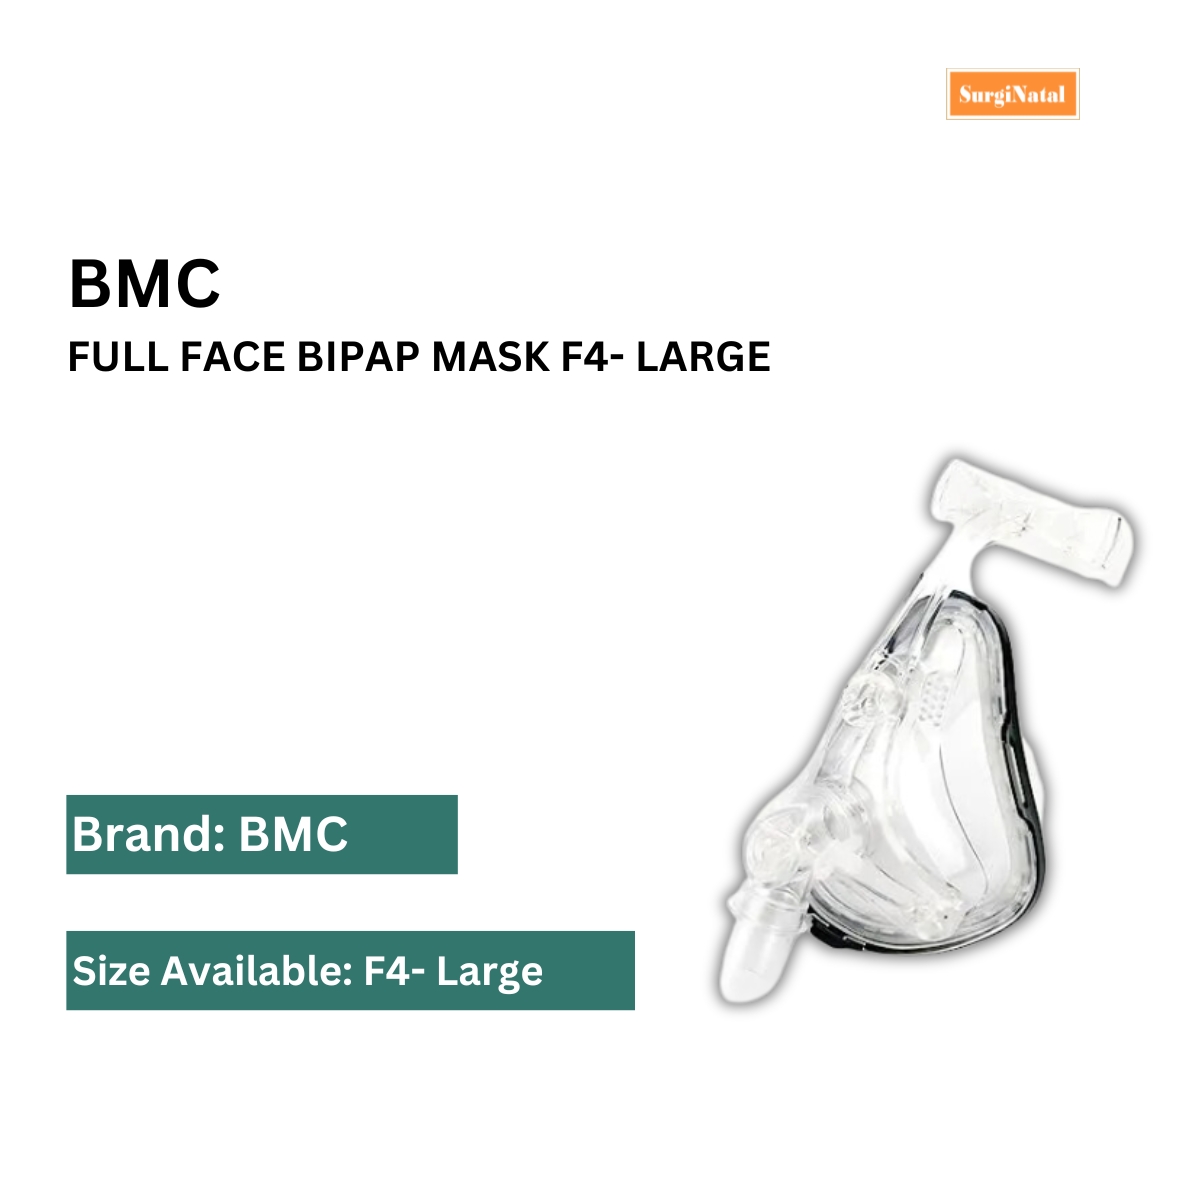  bipap mask price